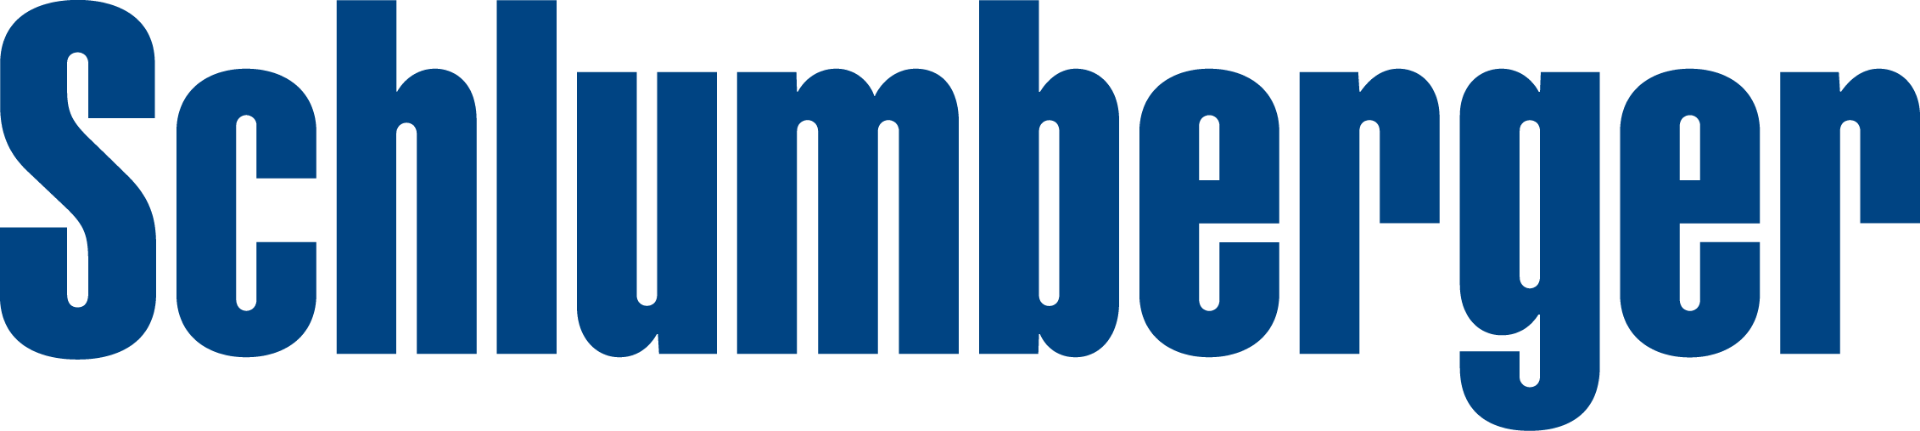 schlum-logo-blue